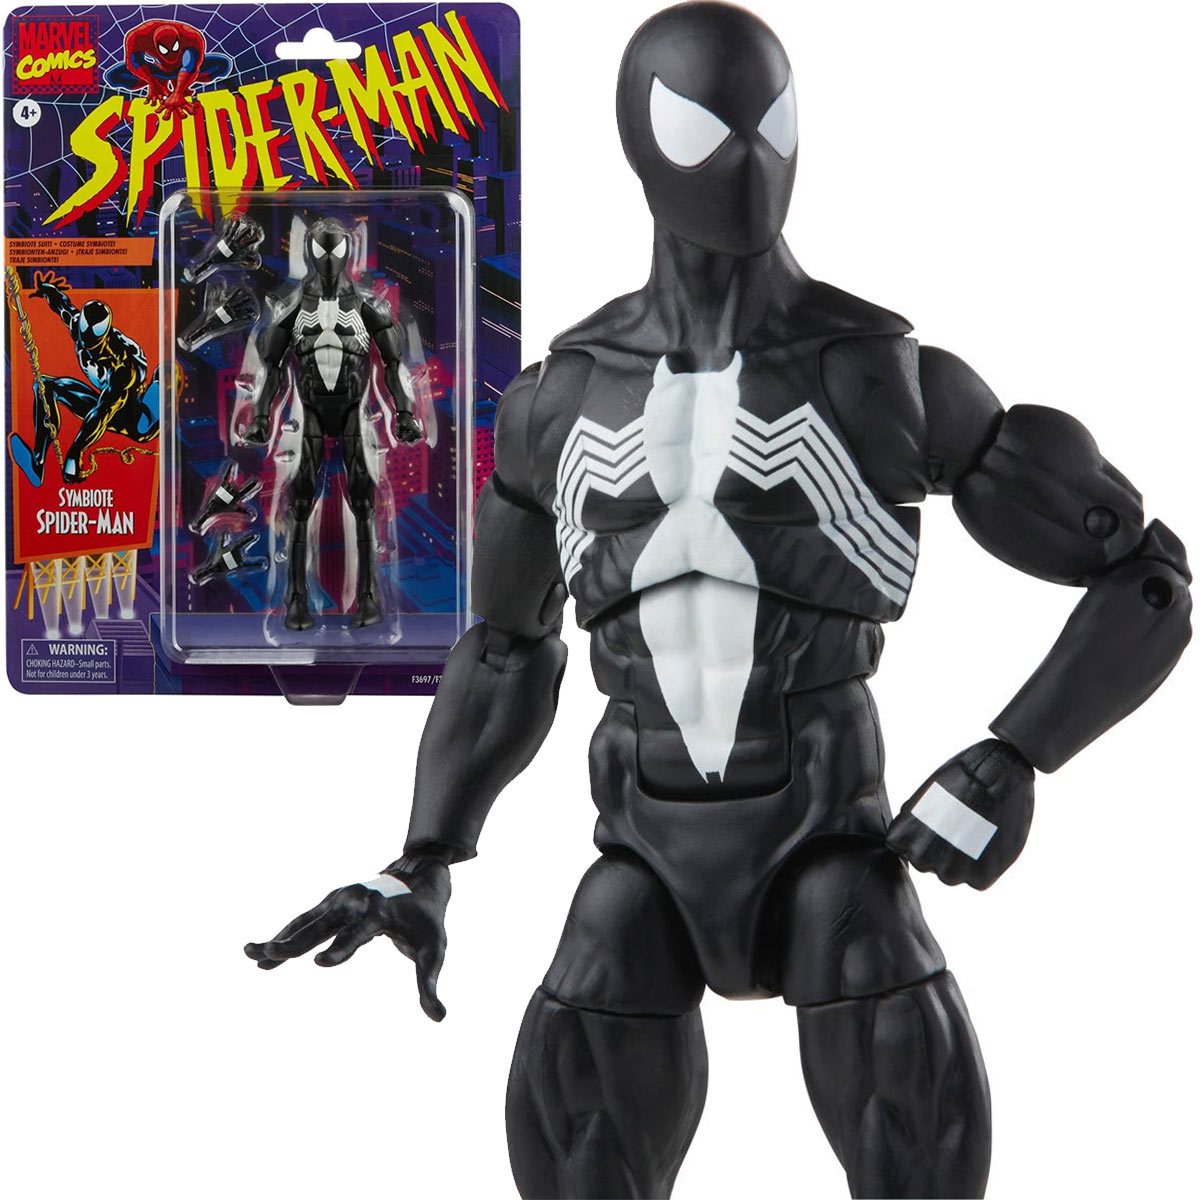 Spiider-man Venom Figure  Patch 4  inches tall 